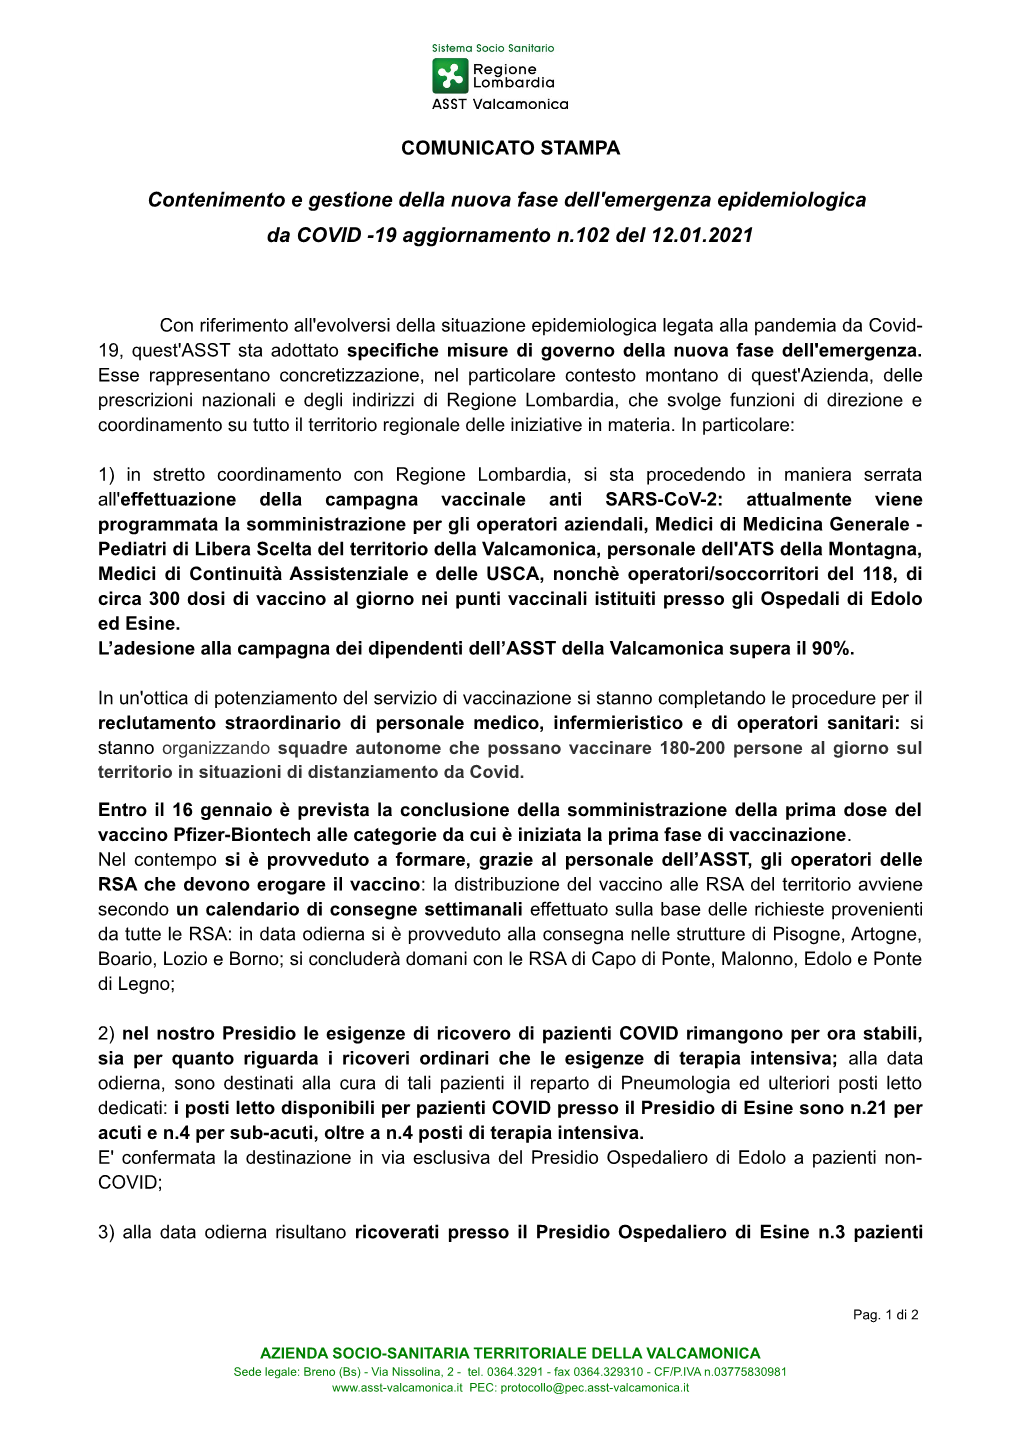 Contenimento E Gestione Della Nuova Fase Dell'emergenza Epidemiologica Da COVID -19 Aggiornamento N.102 Del 12.01.2021